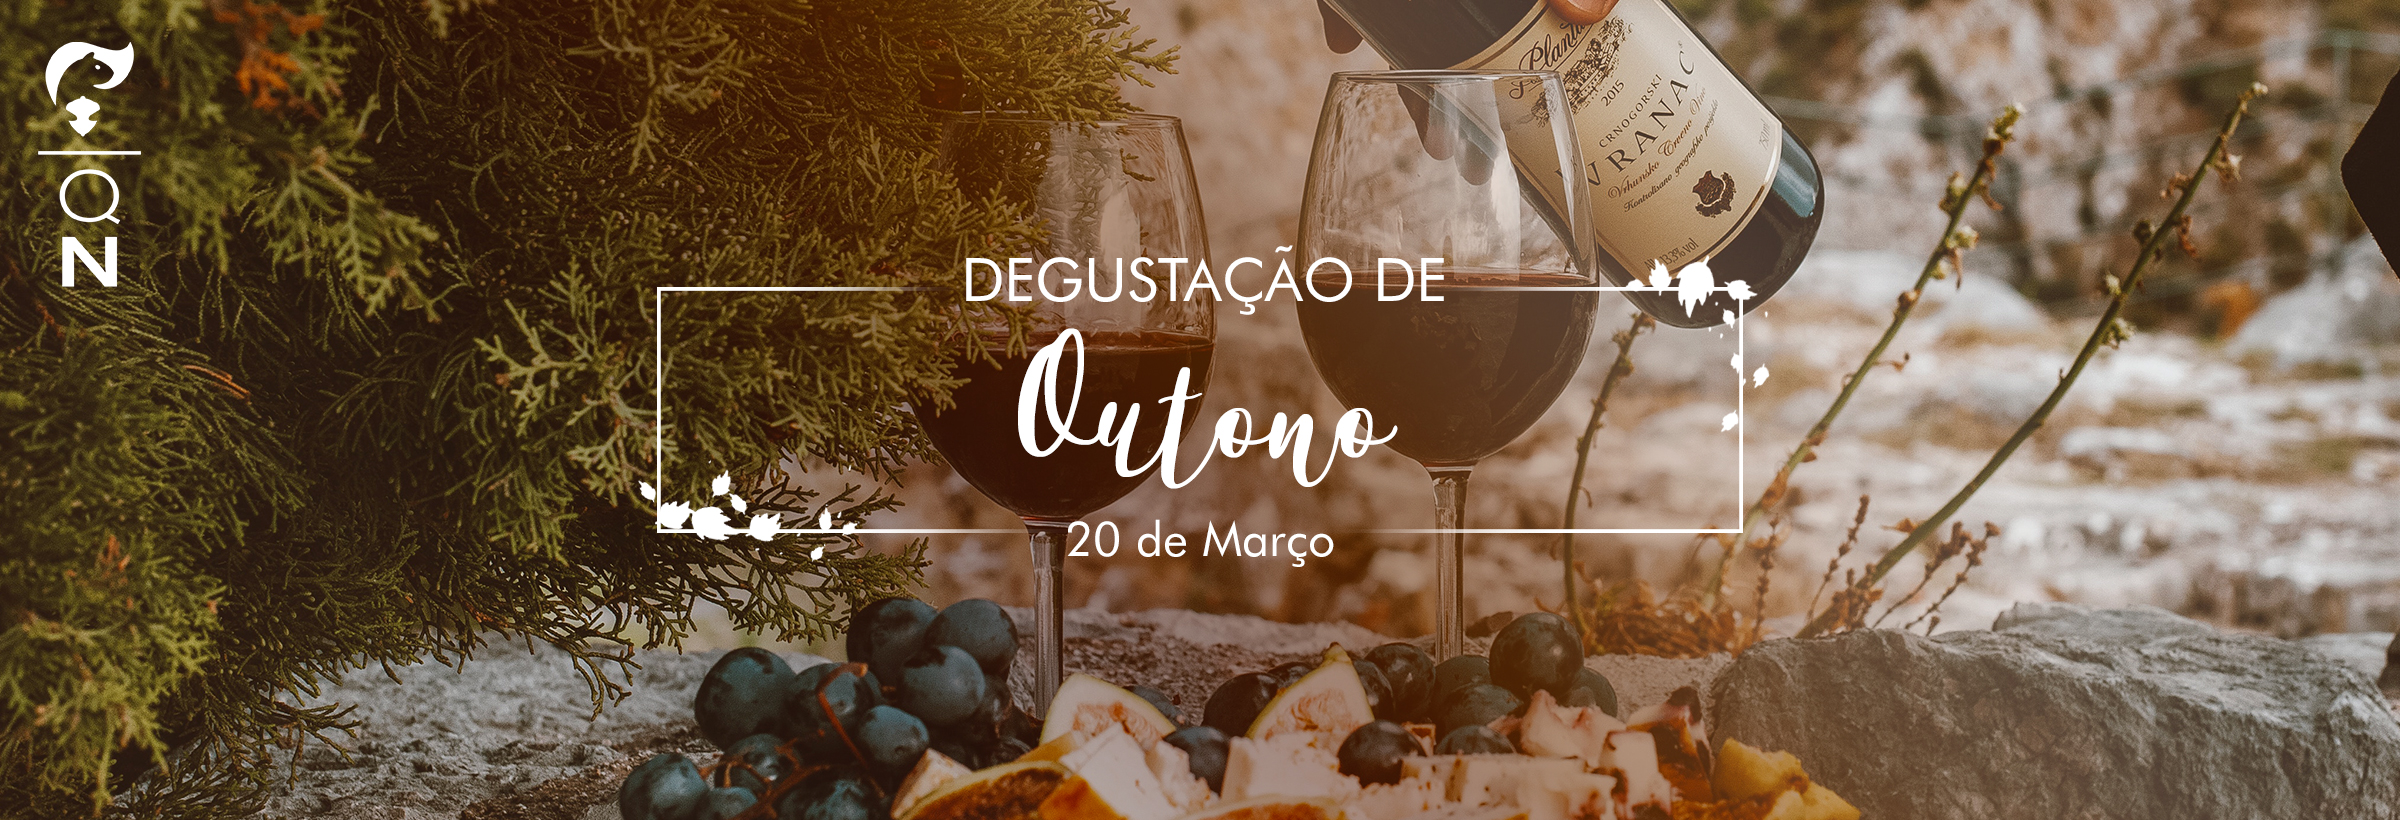 Degustação de Outono - Hotel Boutique Quebra-Noz 2021